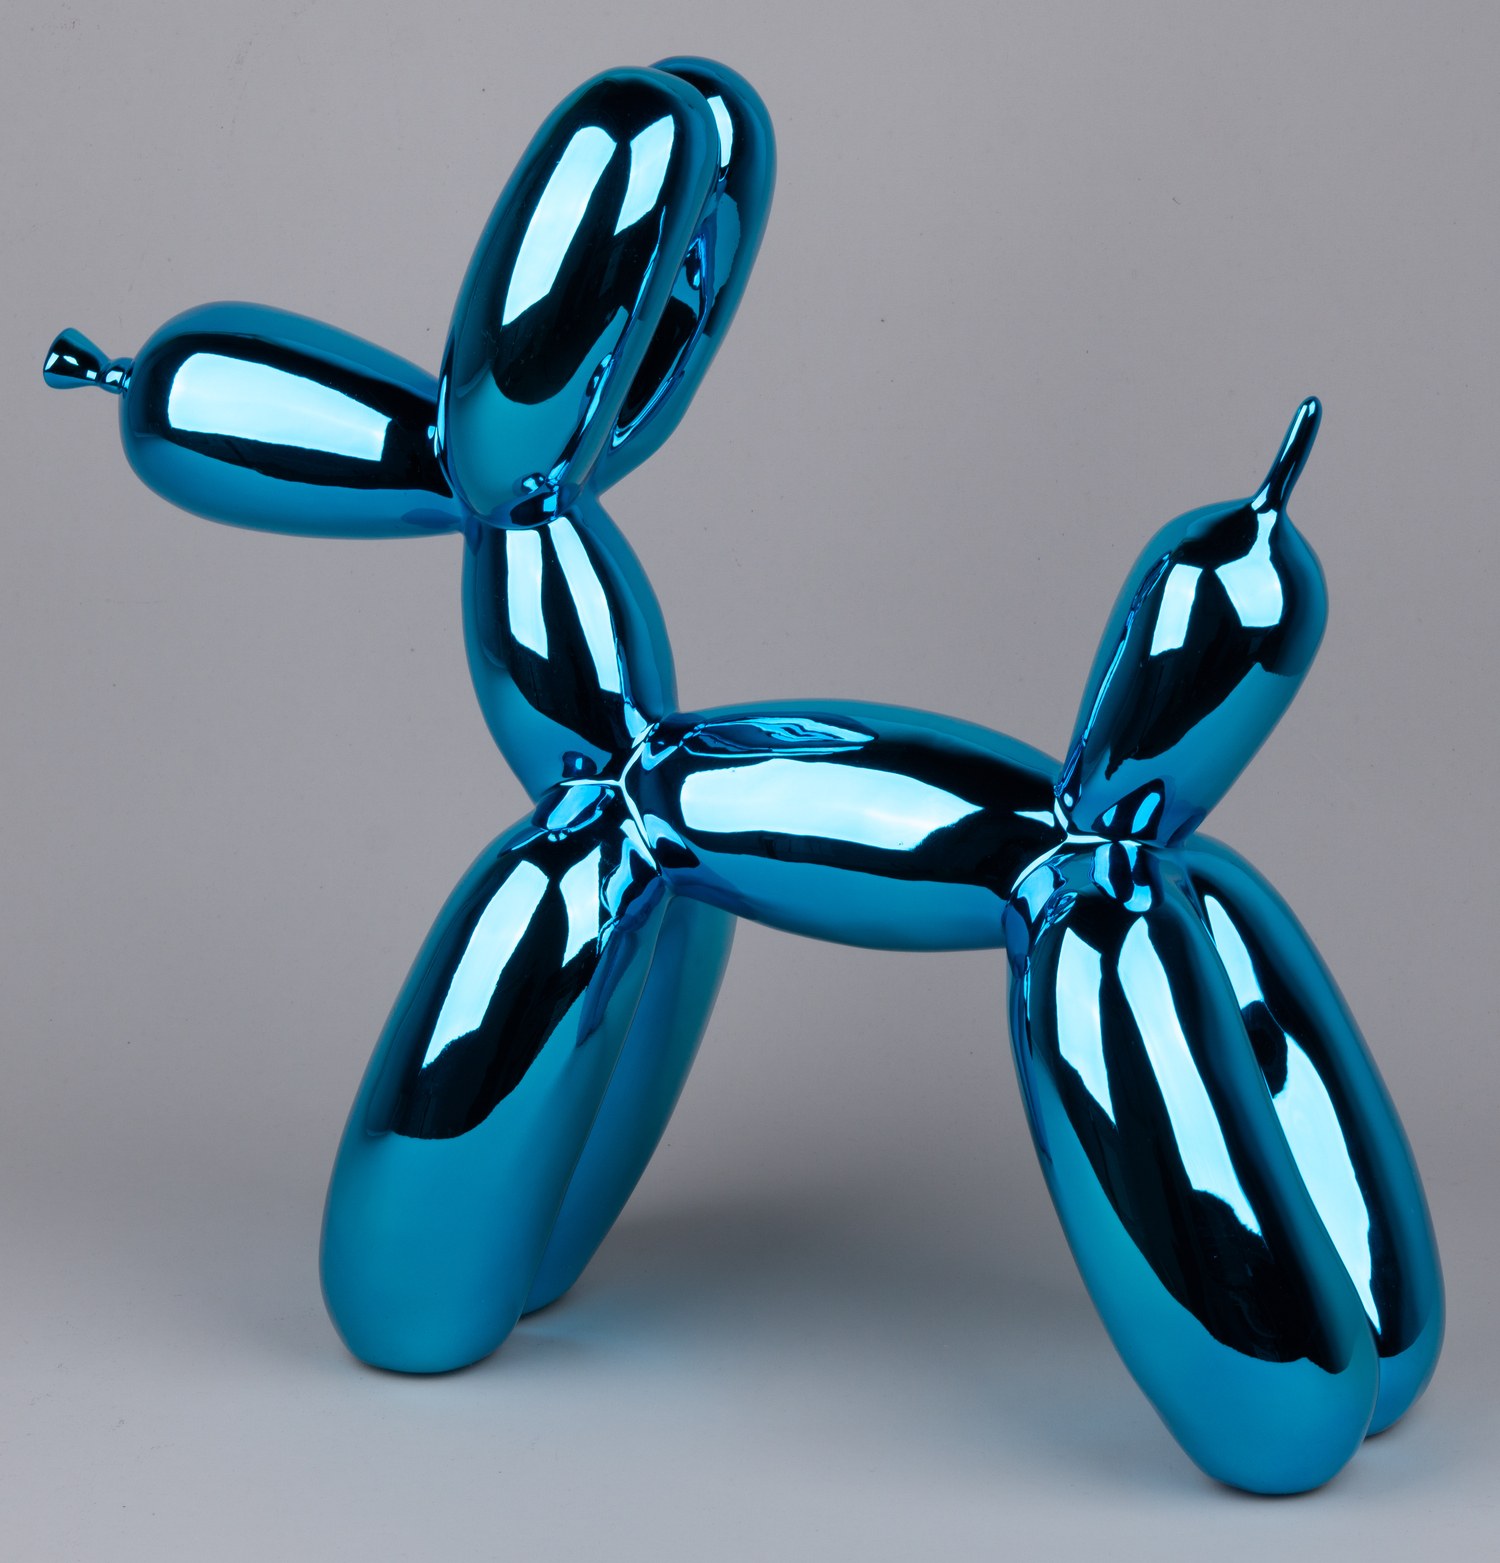 Скульптура «Собака из воздушного шара синего цвета».<br>США, скульптор Джефф Кунс, серия «Celebration», 1994-2000 годы.